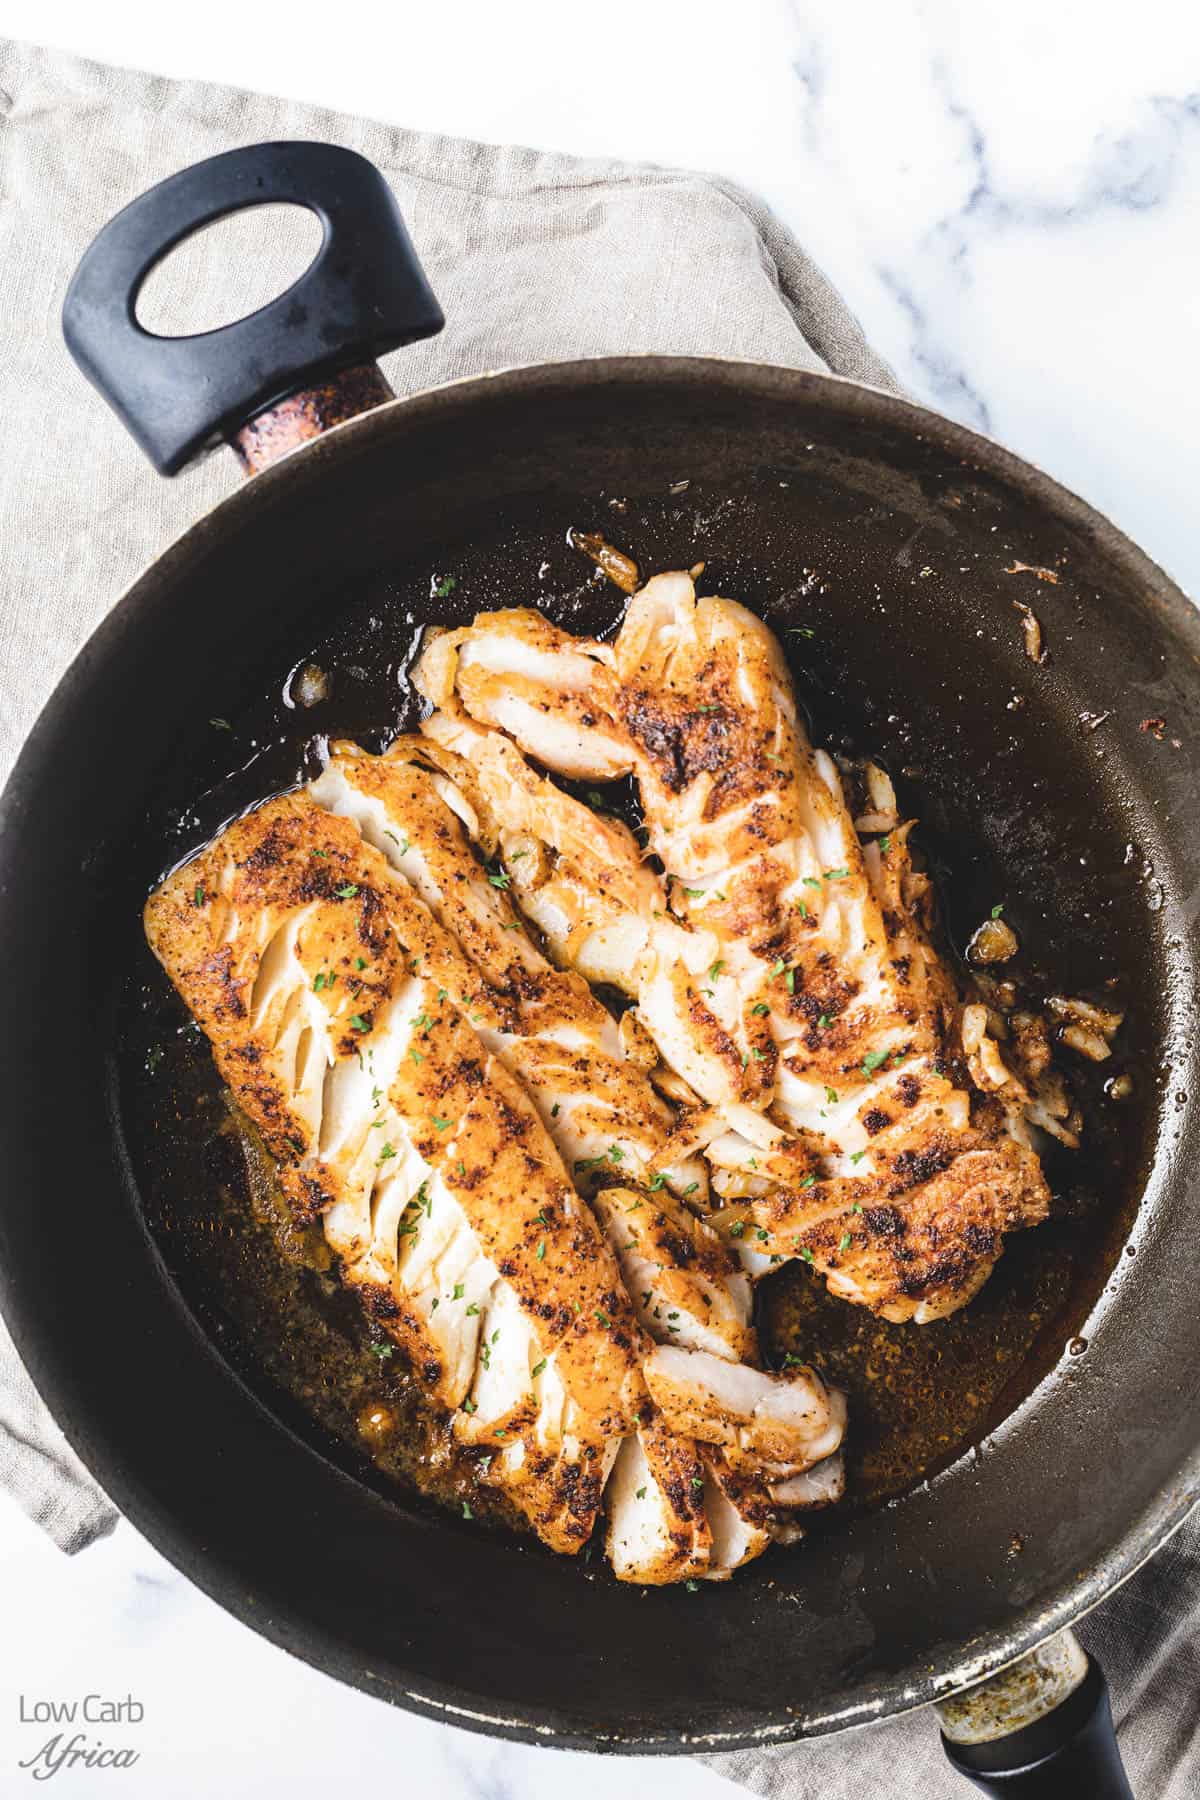 Bread stir-fried cod in a frying pan